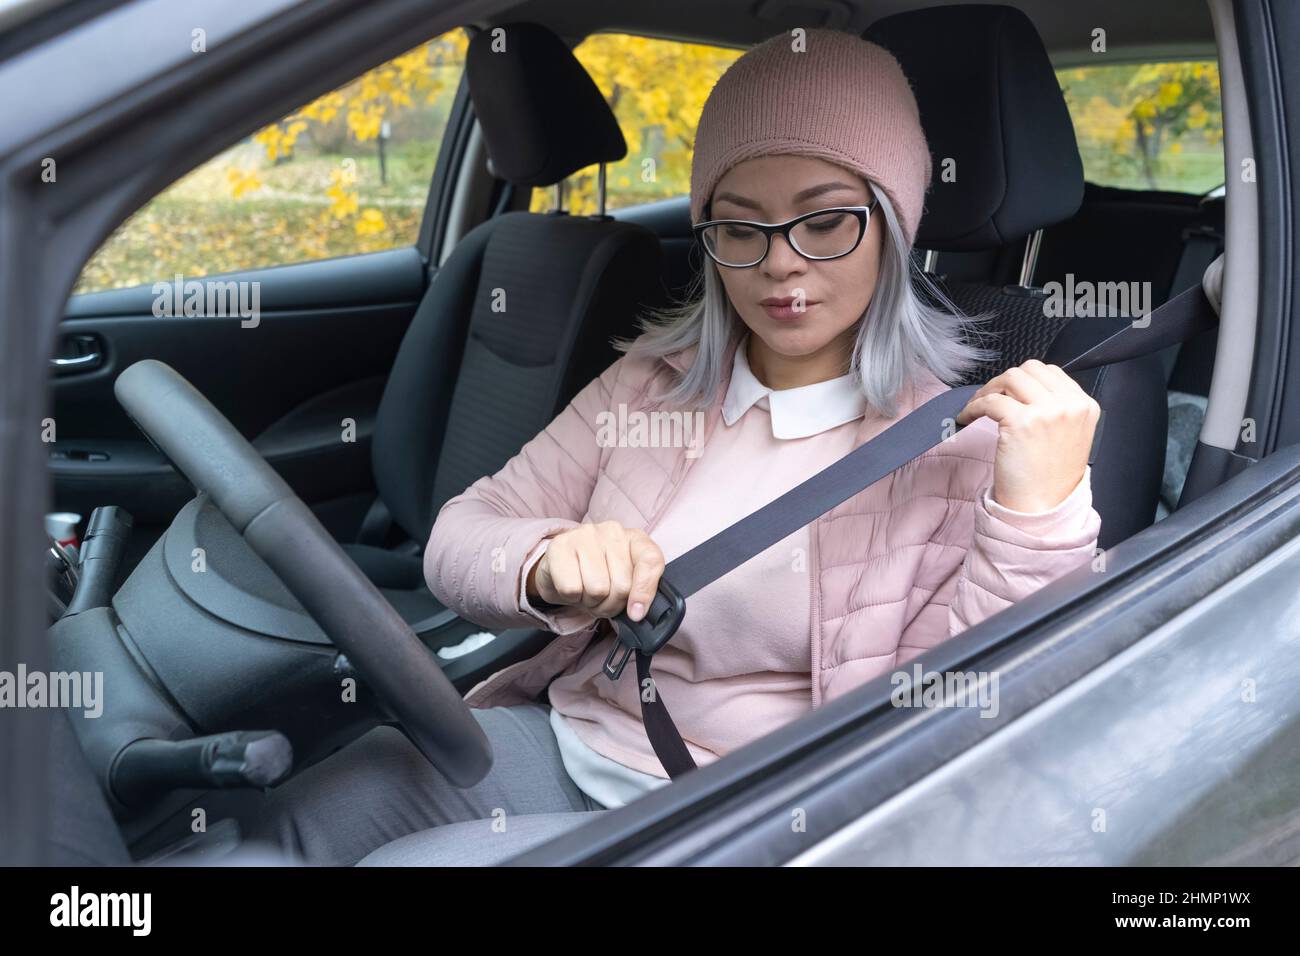 Femme asiatique à jeun une ceinture de sécurité dans la voiture avant le départ. Femme asiatique mûre prenant soin de sa sécurité. Femme asiatique blonde d'âge moyen dans la voiture. Concept de sécurité sur route. Banque D'Images